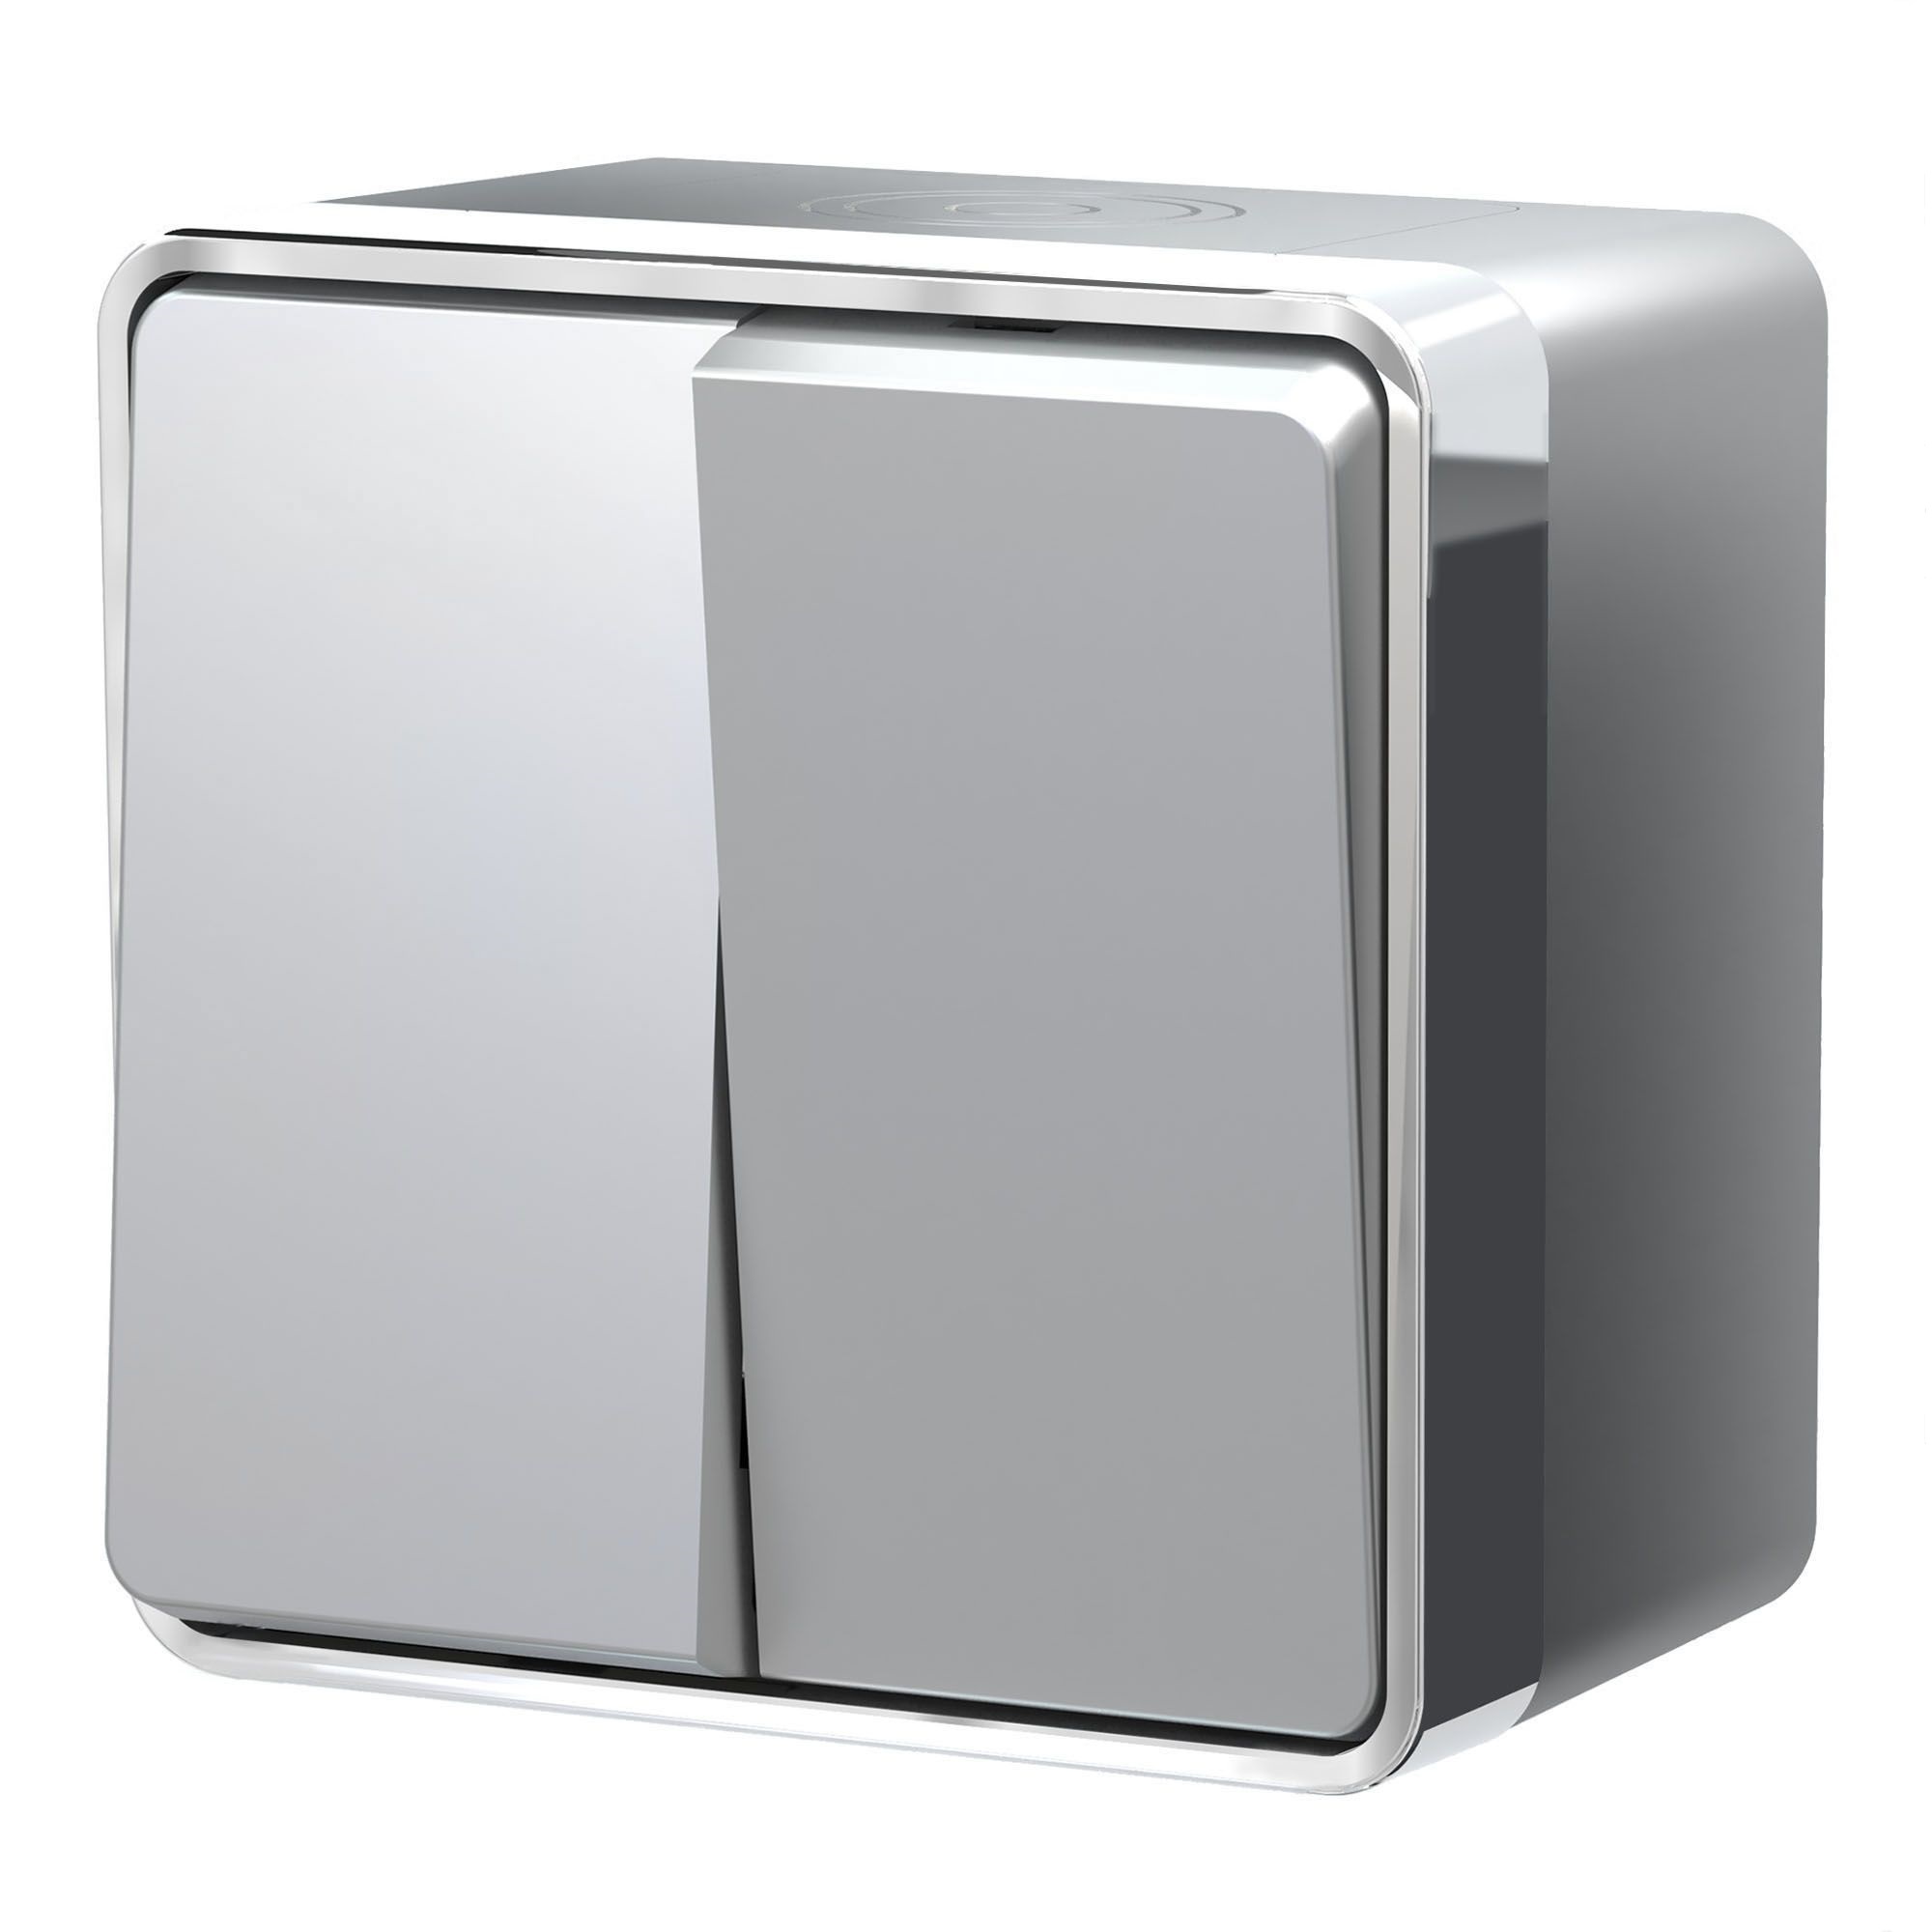 Выключатель Werkel Gallant двухклавишный накладной серебряный (a052771) выключатель werkel gallant a052769 двухклавишный открытая установка серебряный ip20